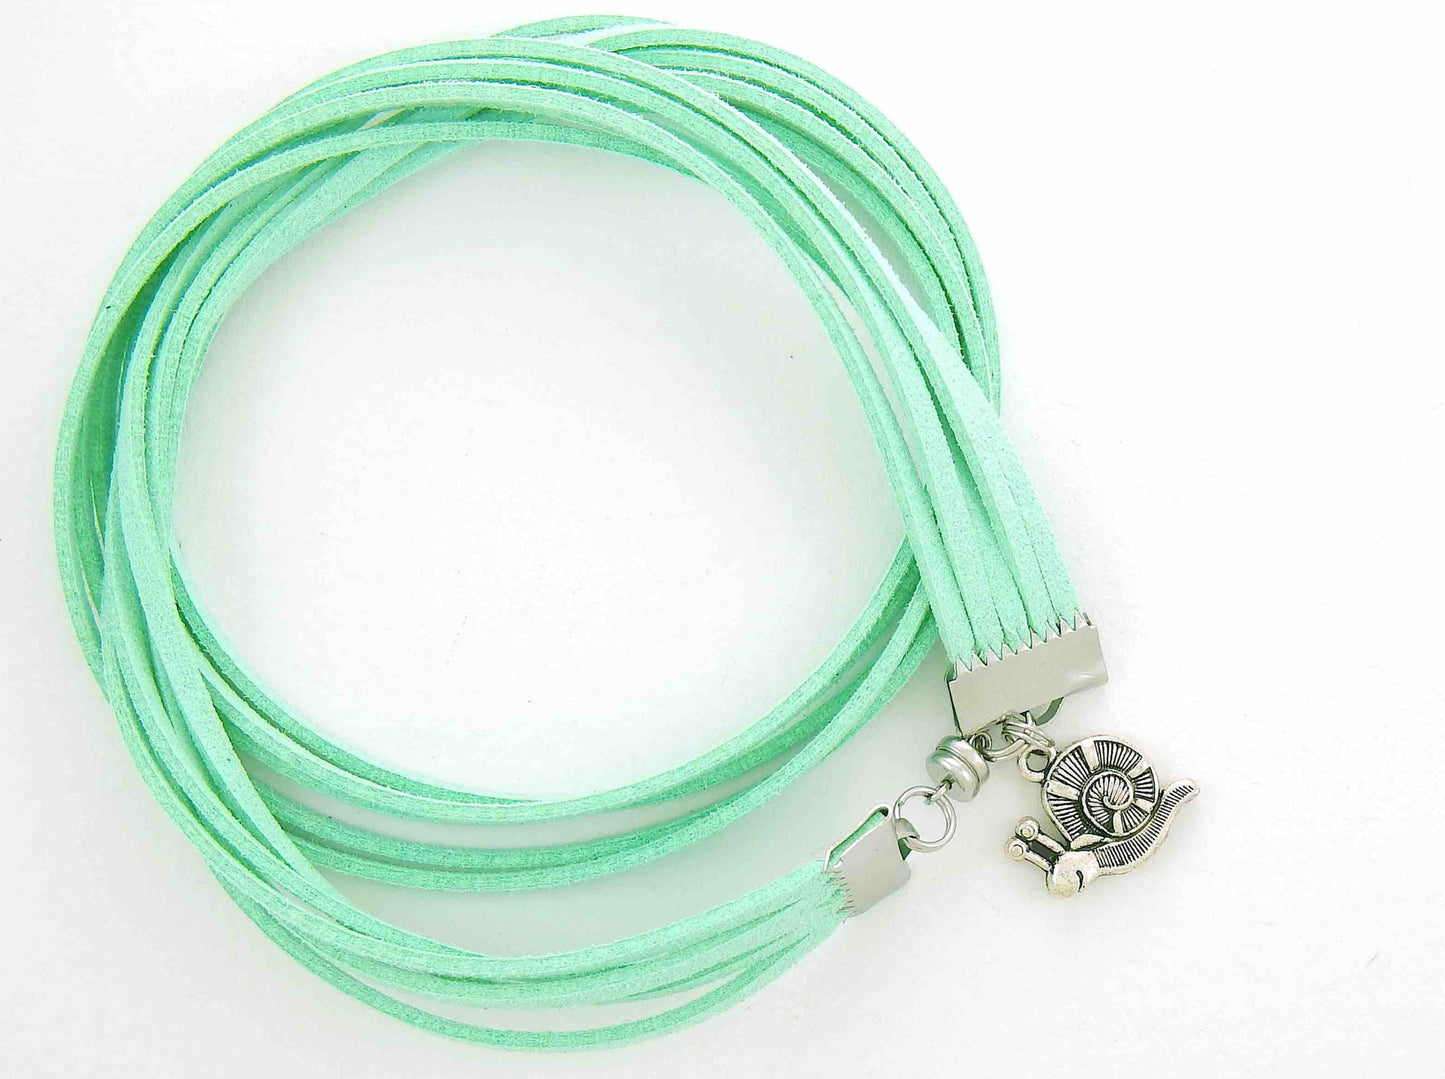 Bracelet enveloppant de faux suède vert menthe, breloque escargot joyeux, fermoir magnétique acier inoxydable